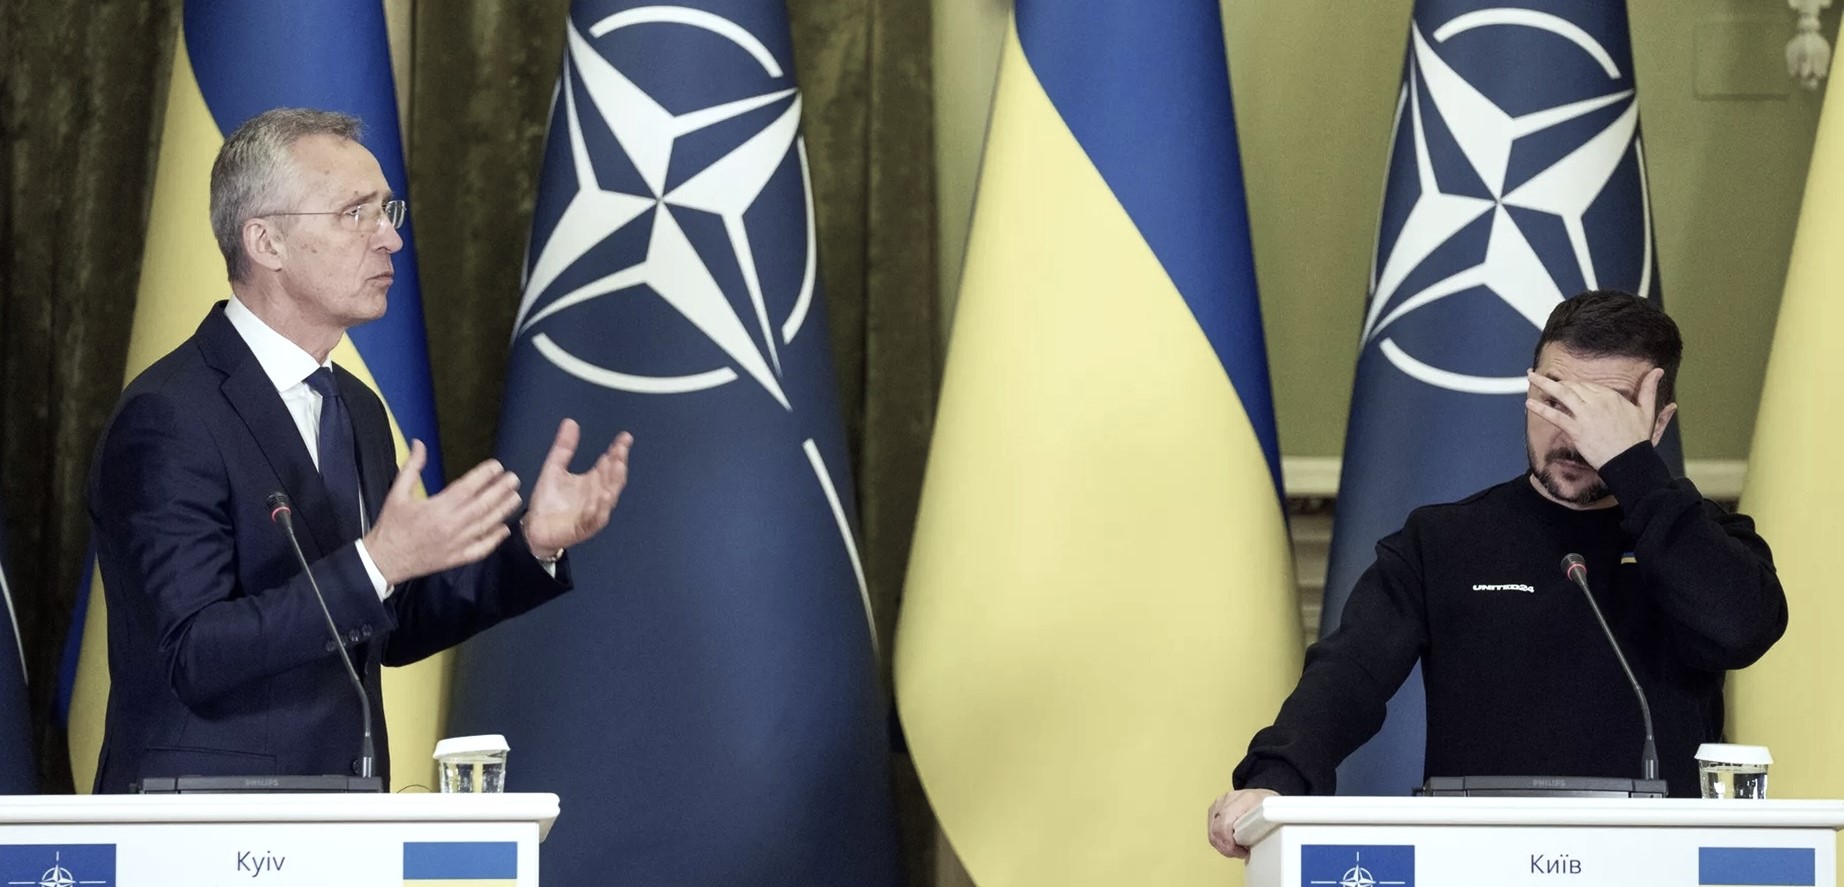 Le speranze illusorie fomentate dalla NATO spingono l’Ucraina a combattere allo sfinimento e a rischiare un’escalation